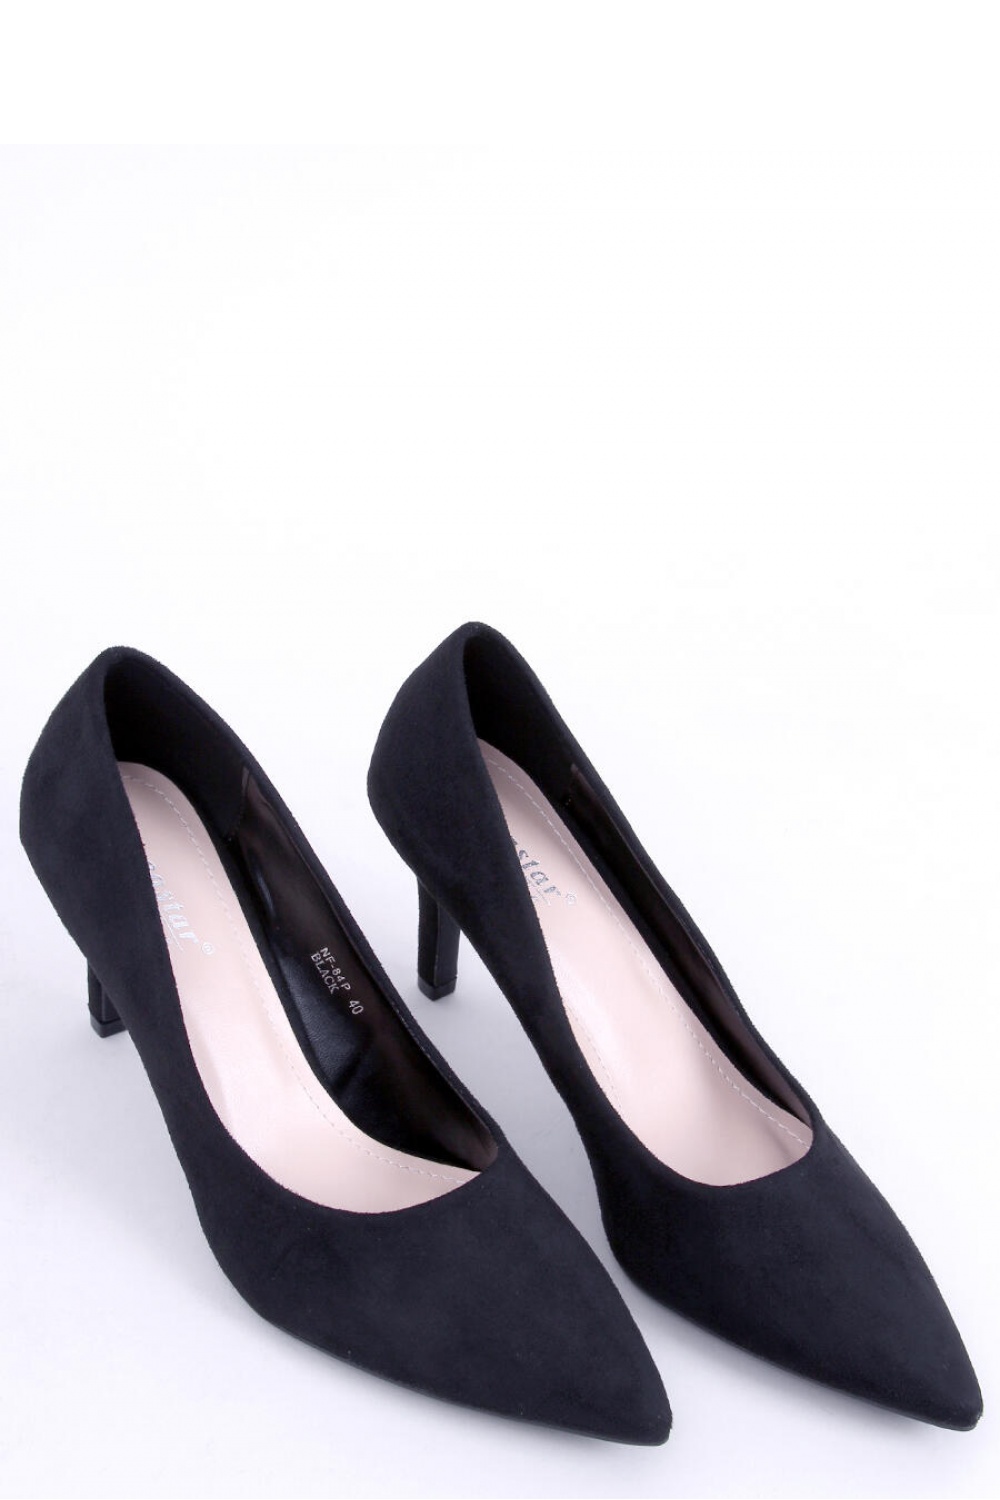 High heels model 172834 Inello